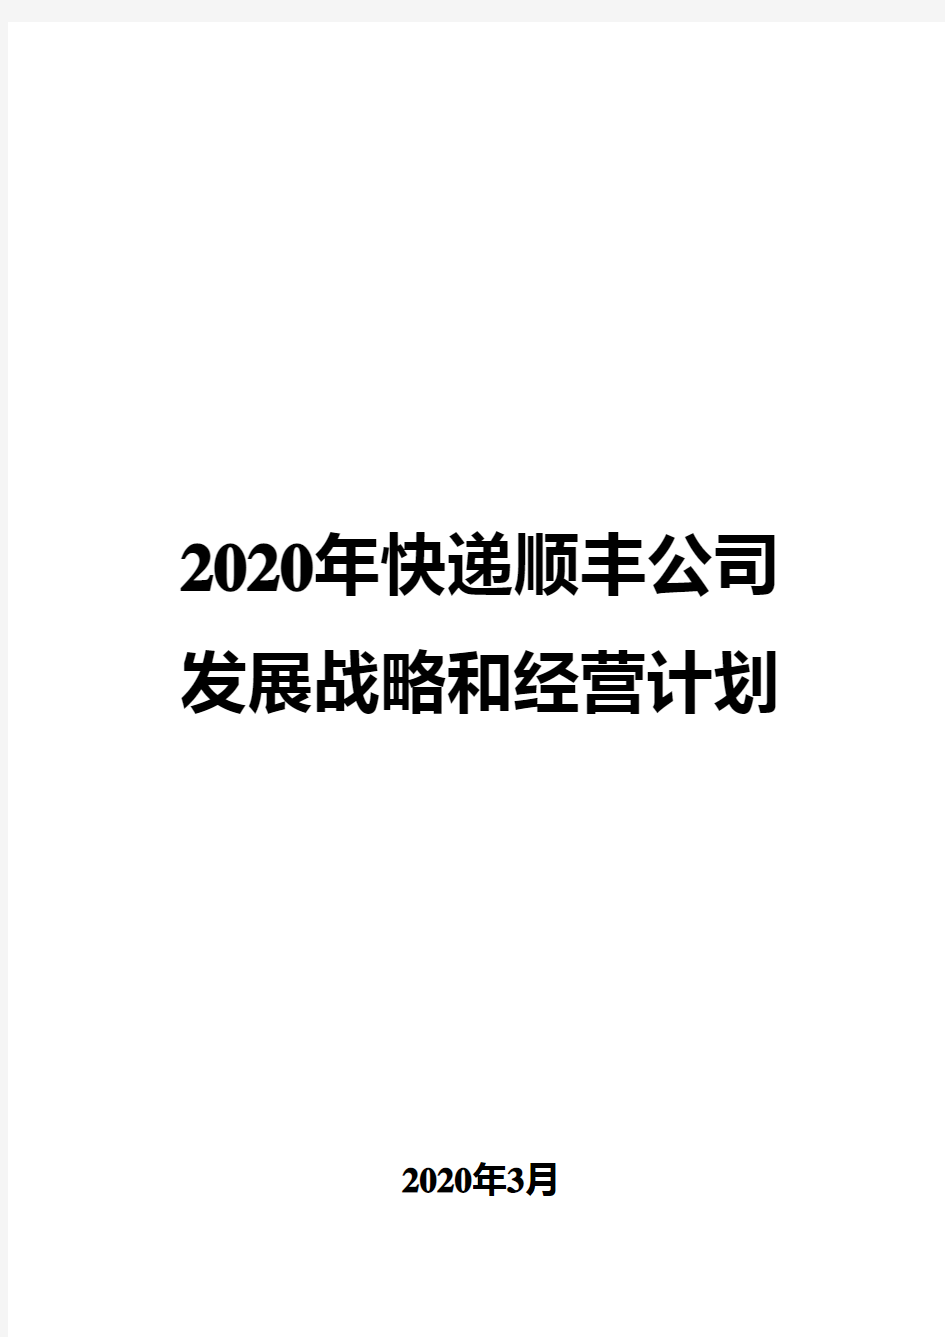 2020年快递顺丰公司发展战略和经营计划